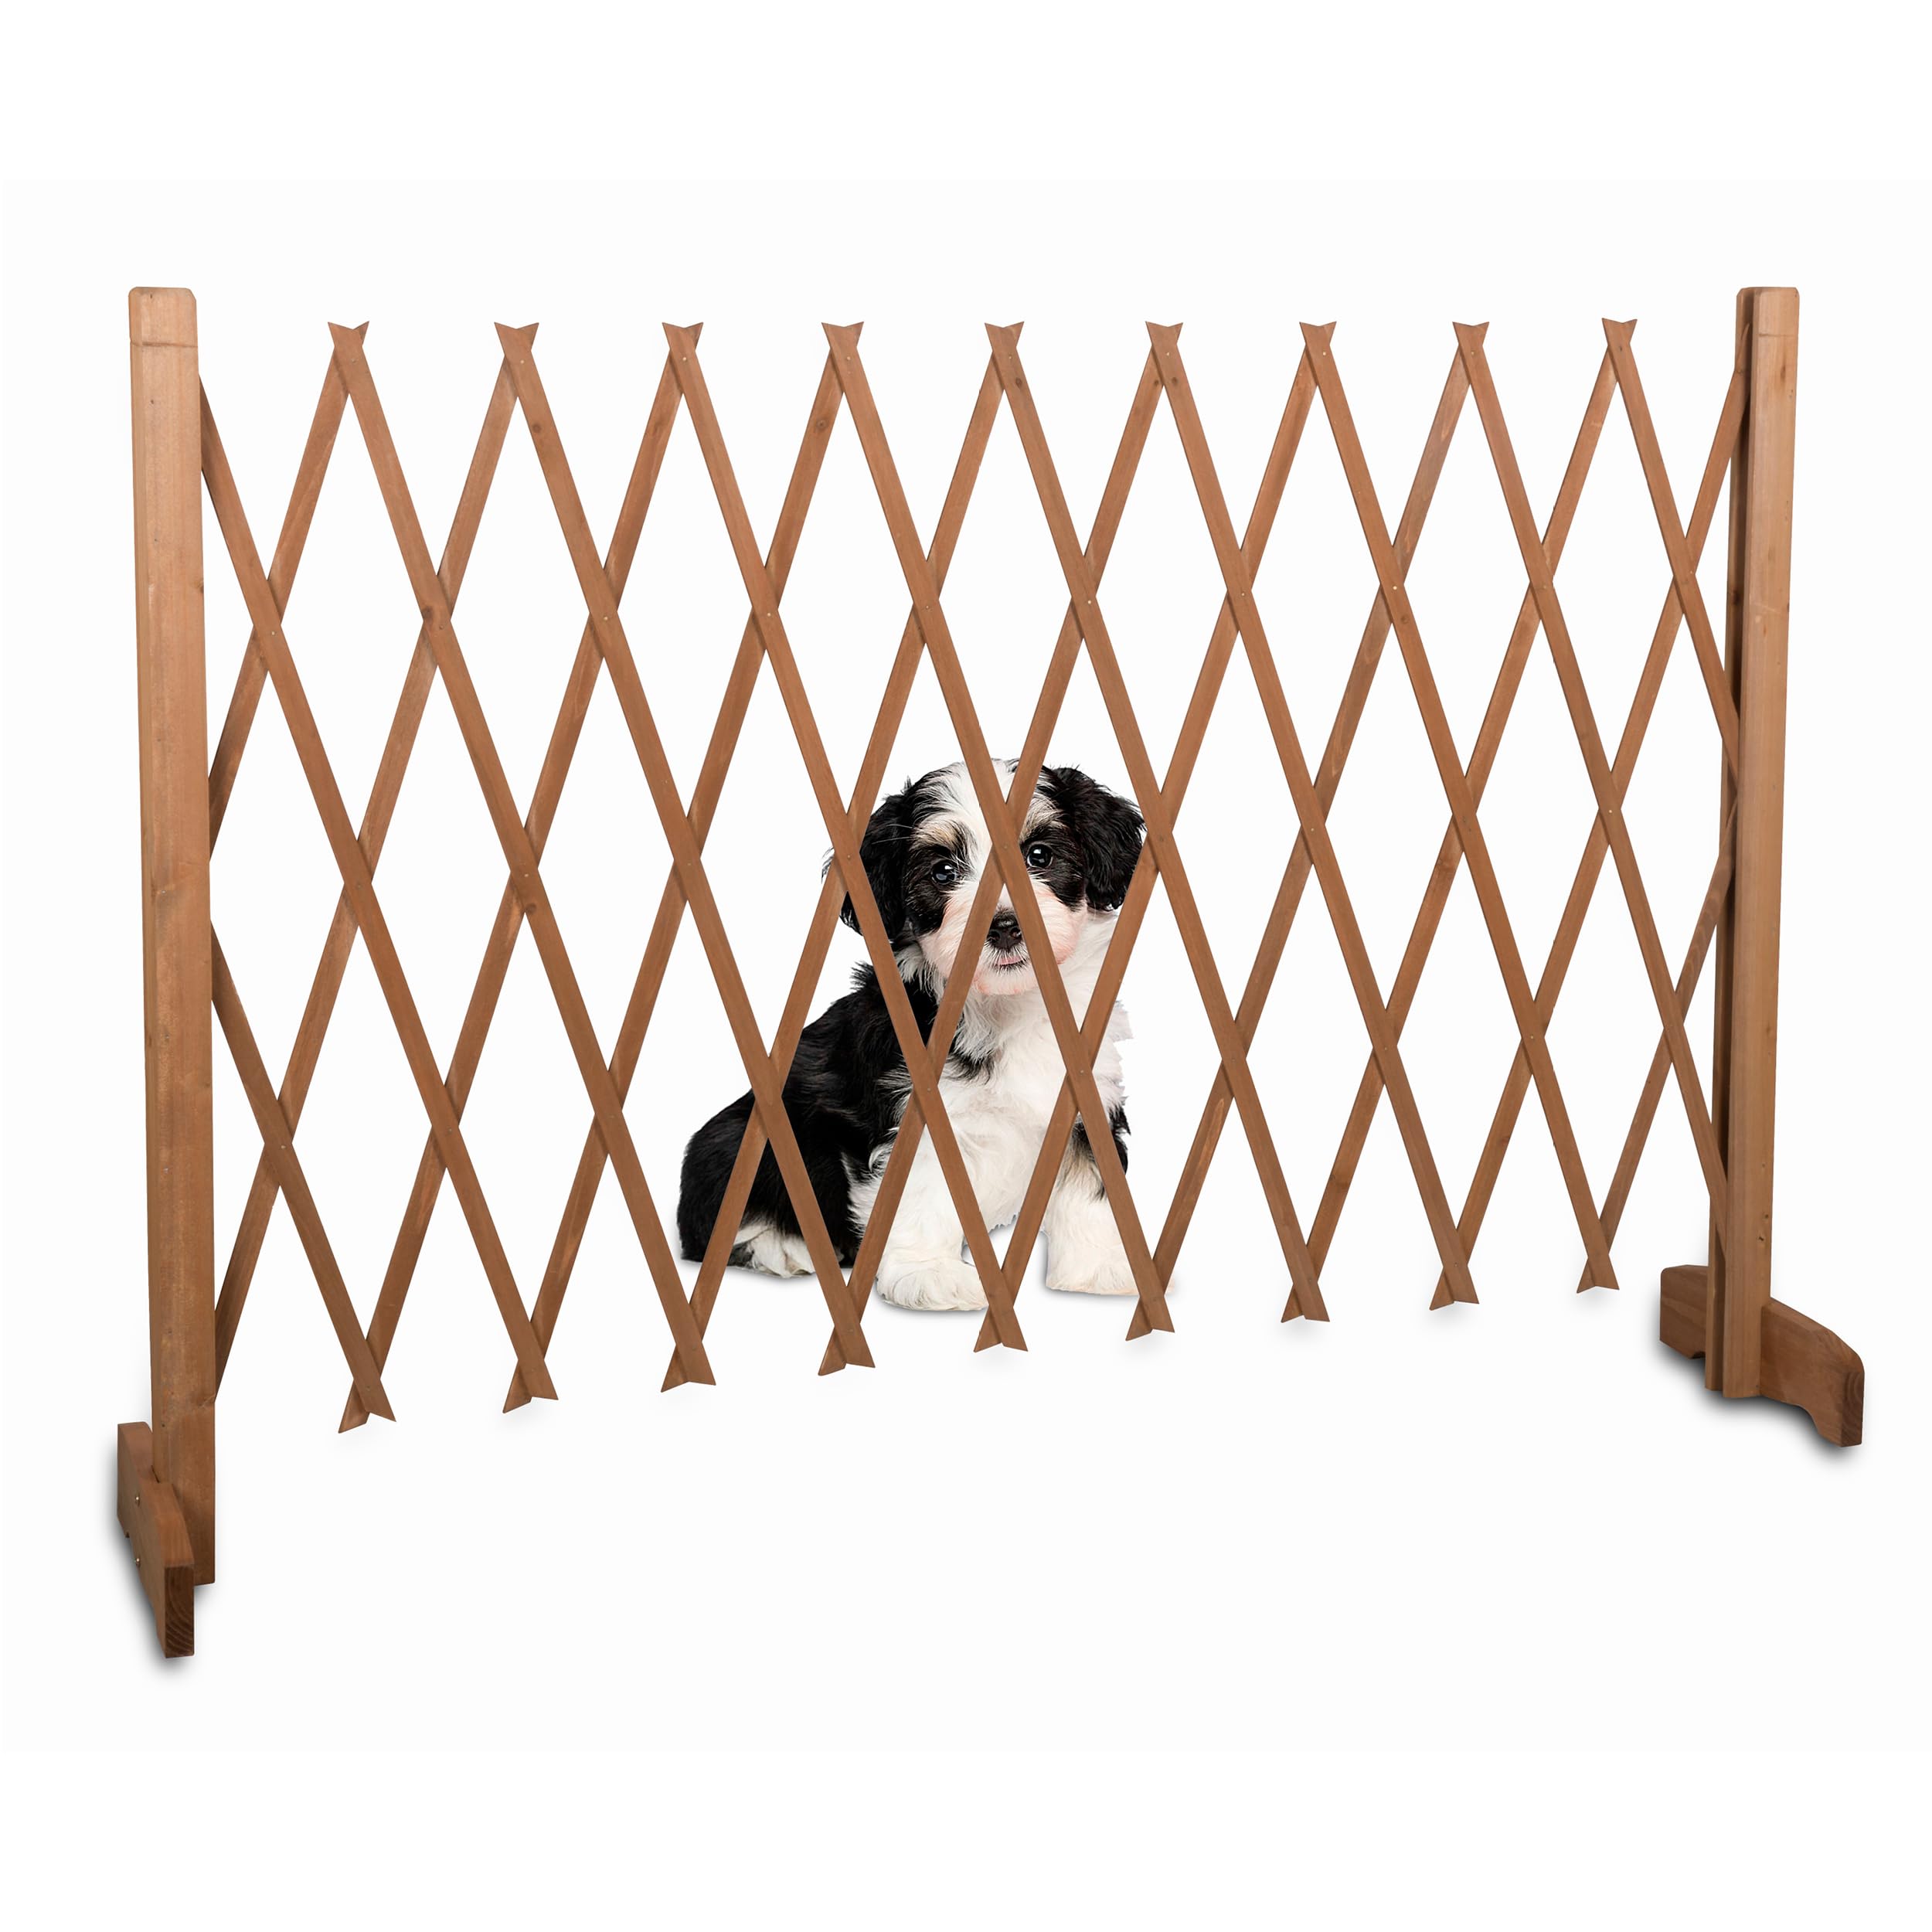 maxxpro Abspergitter Hund - Versenkbarer Hundegitter - Schutzgitter Ausziehbare Breite 30 bis 117 cm - Tür- & Treppengitter - für Innen und Außen Gebrauch - Holz - Braun